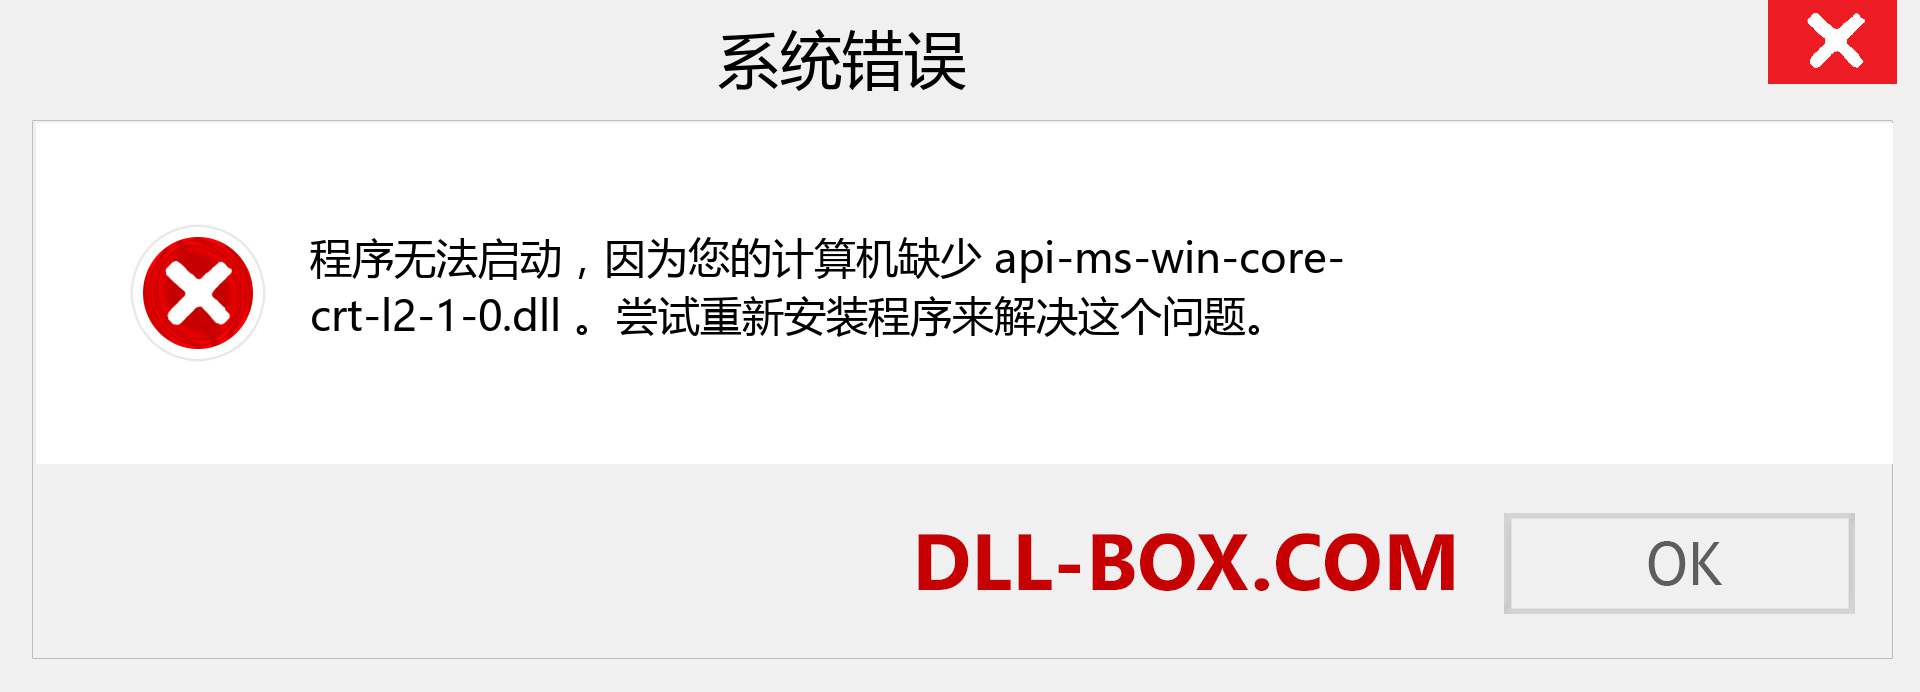 api-ms-win-core-crt-l2-1-0.dll 文件丢失？。 适用于 Windows 7、8、10 的下载 - 修复 Windows、照片、图像上的 api-ms-win-core-crt-l2-1-0 dll 丢失错误